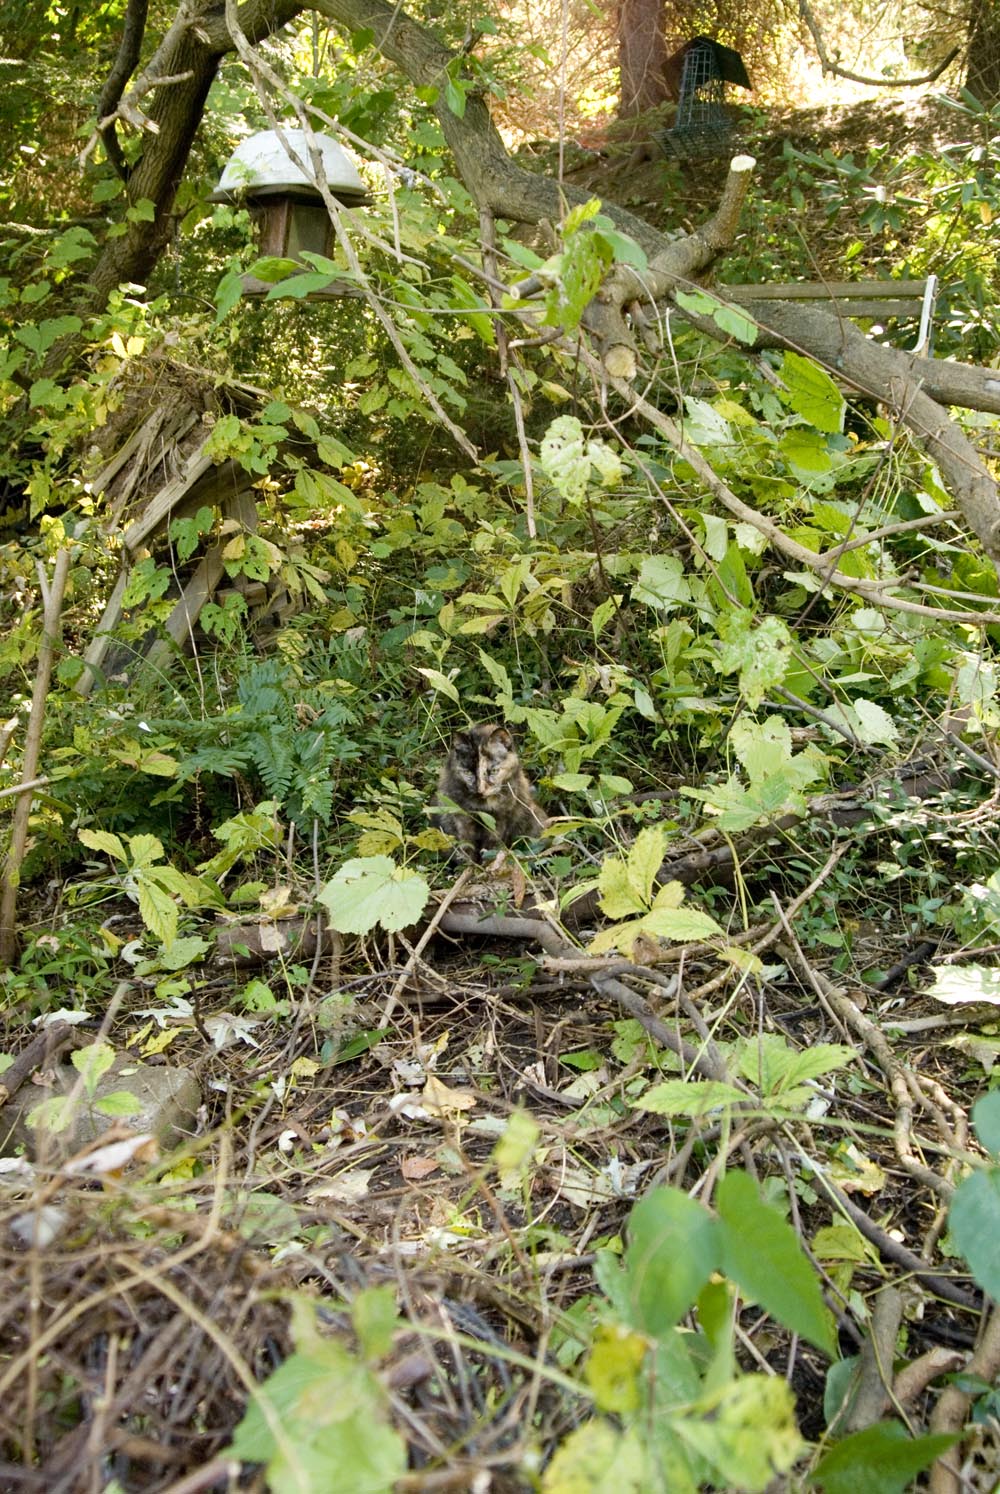 tortoiseshell cat in weeds